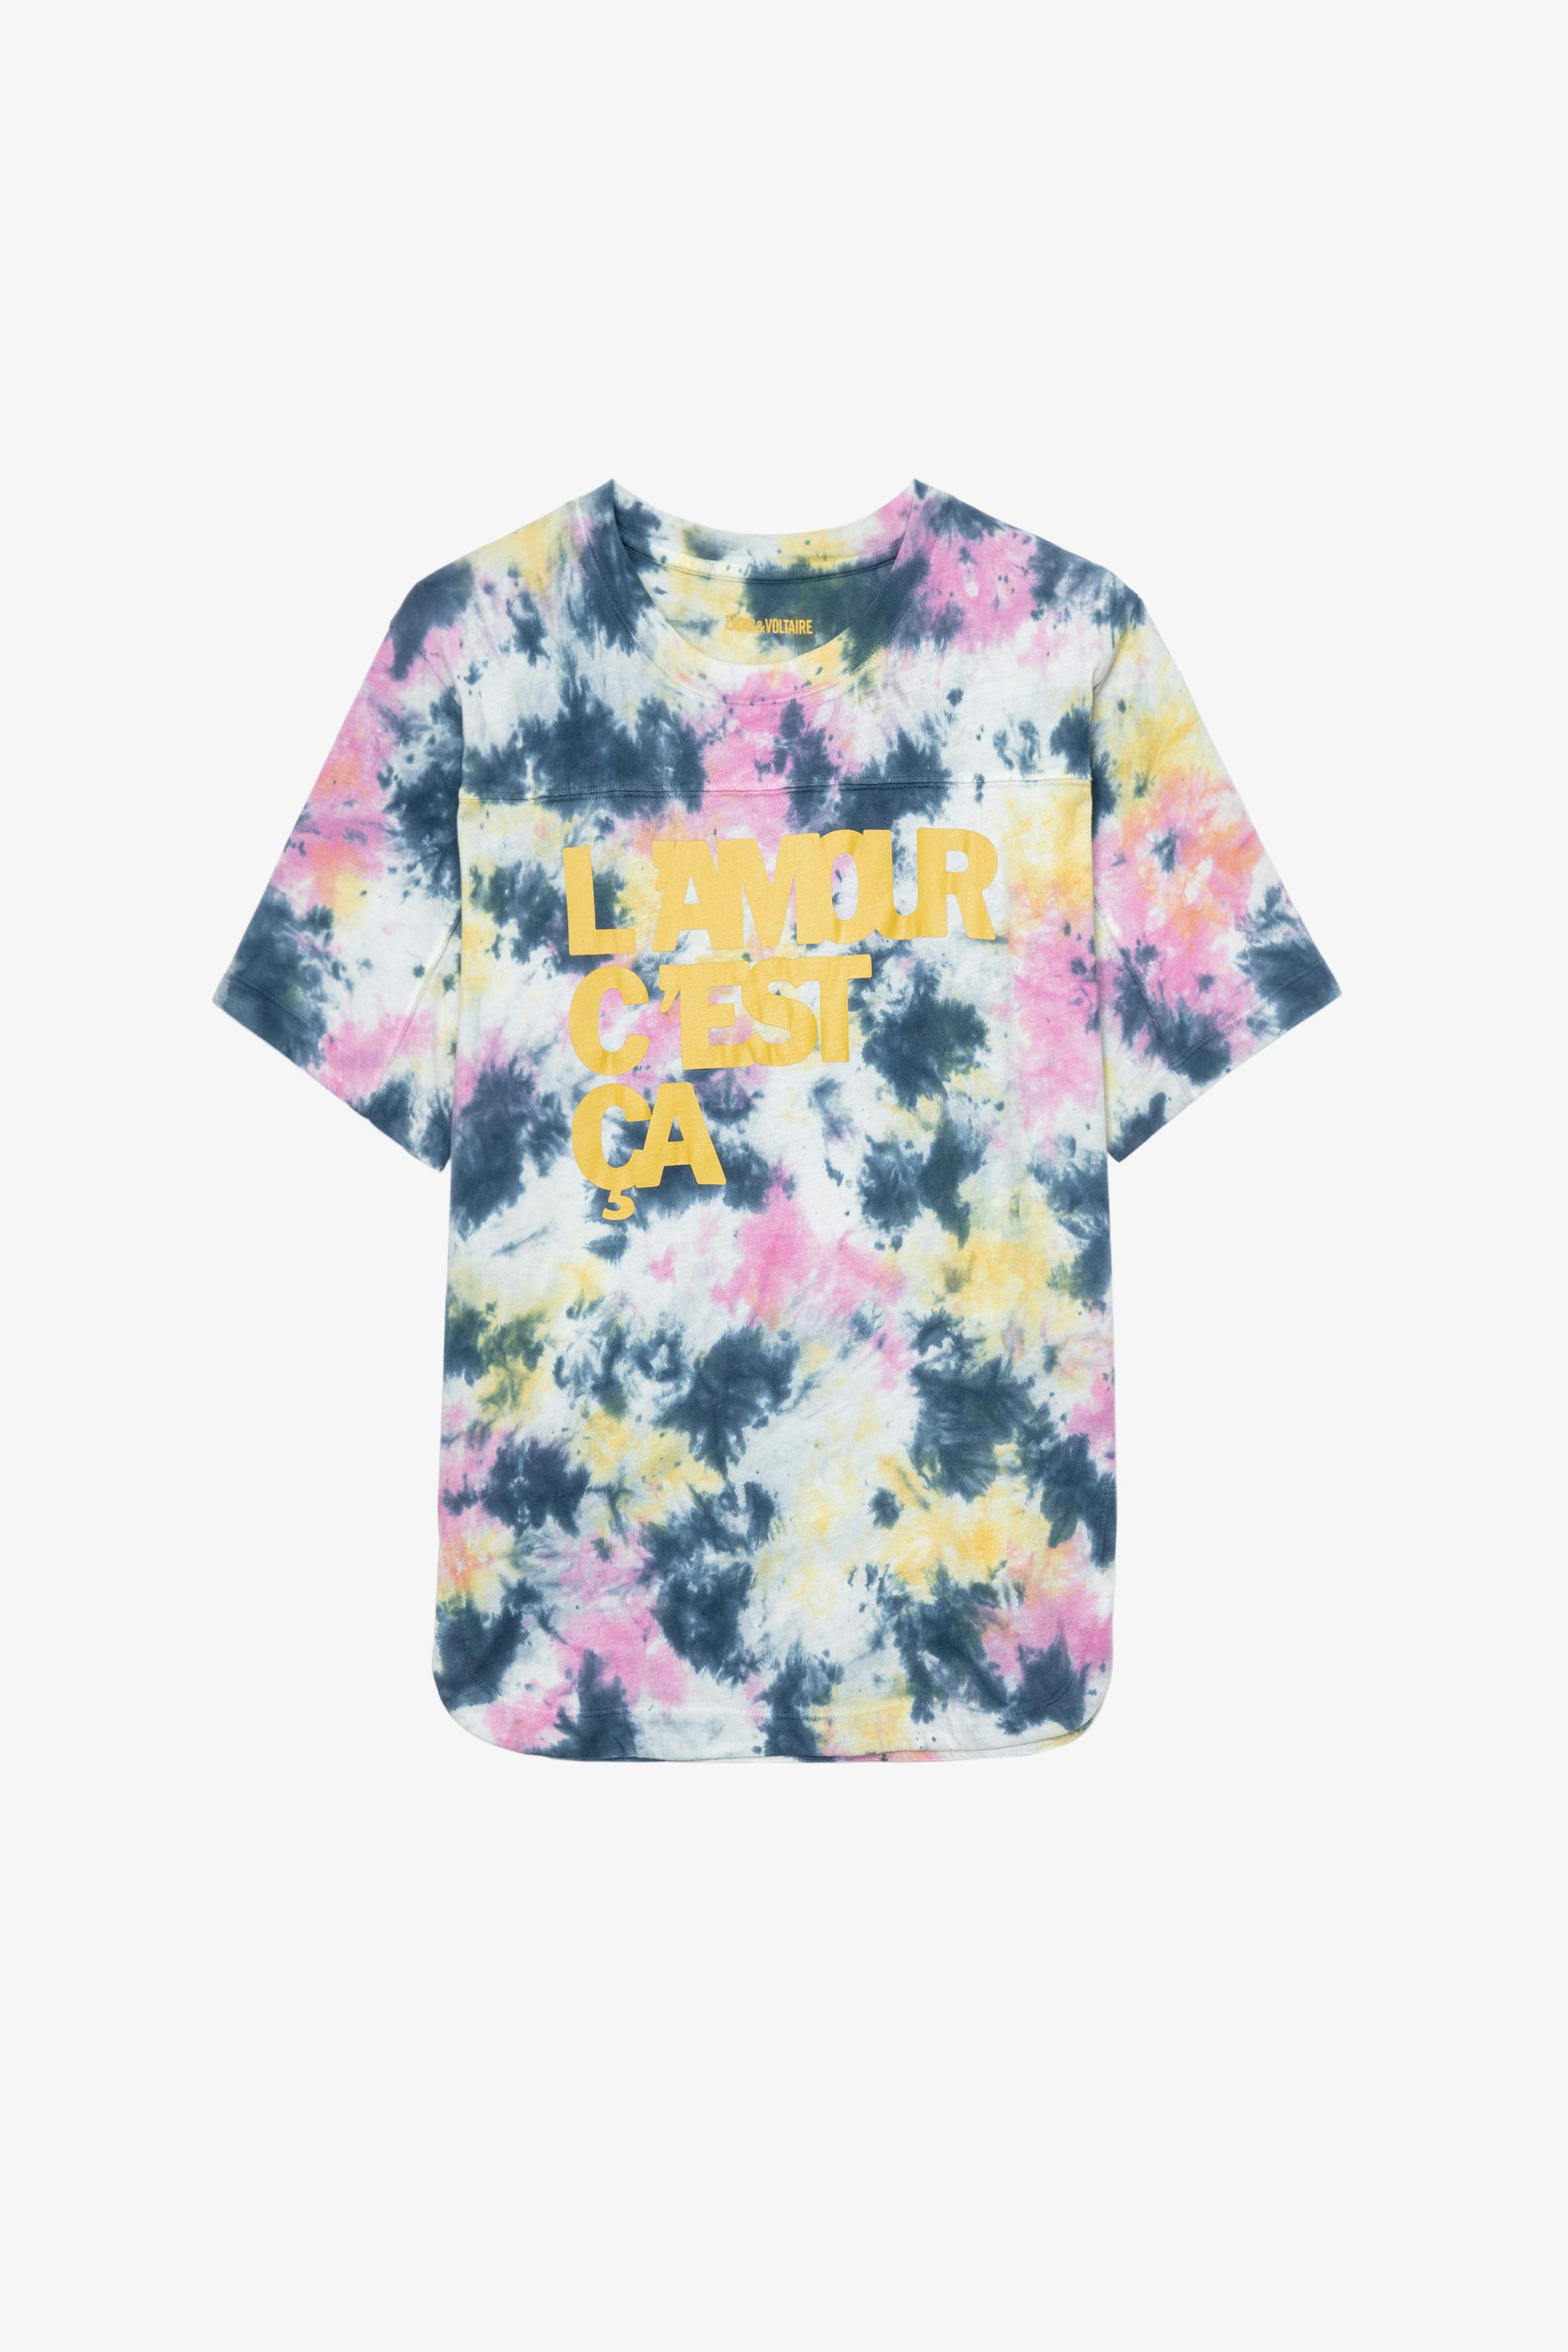 Bow L'amour c'est ça T-Shirt Women's “L'amour c'est ça” T-shirt in multicoloured tie-dye cotton